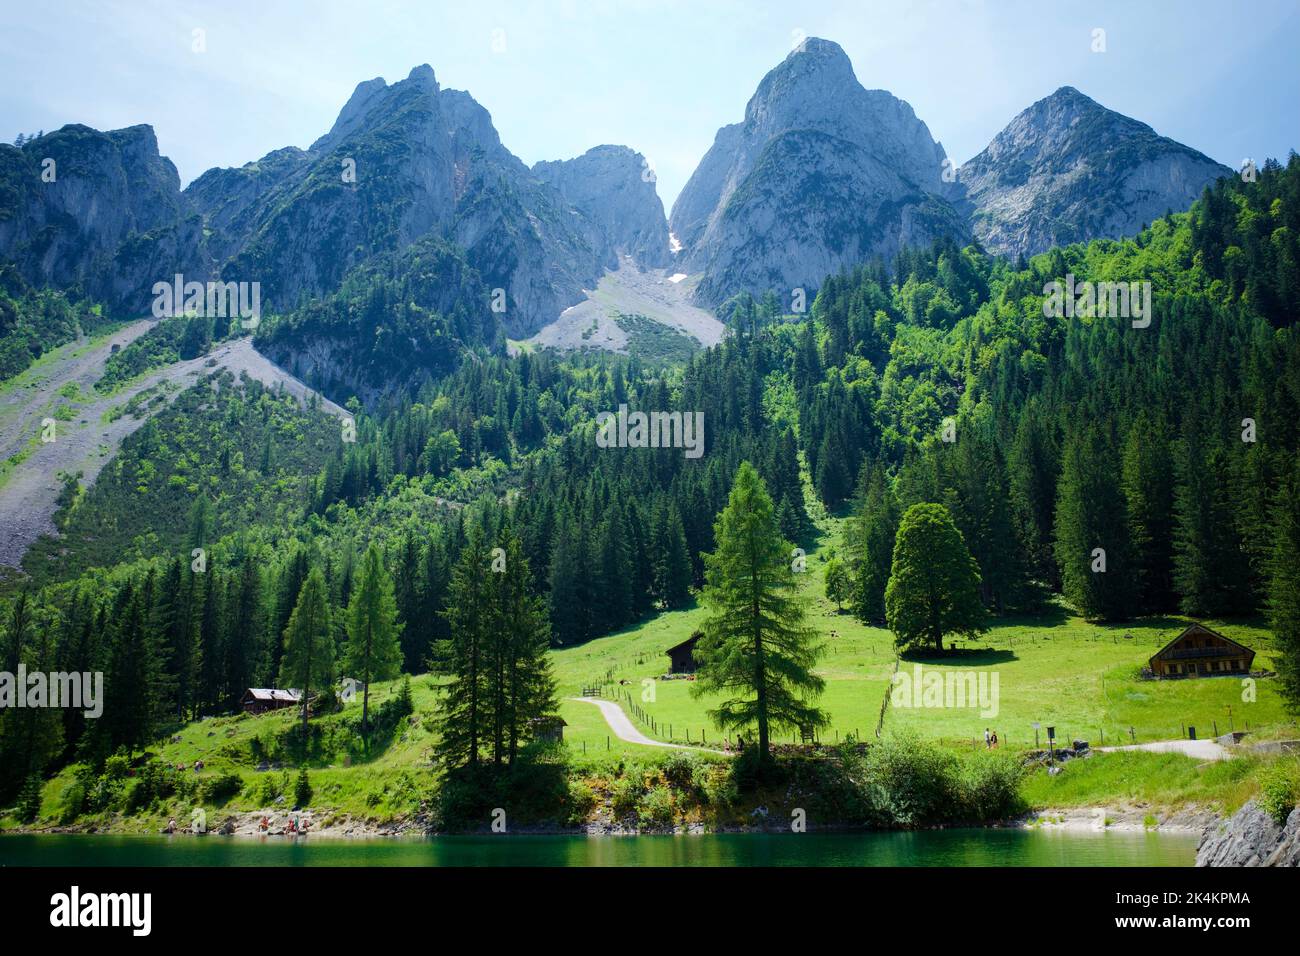 Gosau, alpiner Teil von Oberösterreich. Die Berge, die die Seen umgeben, werden Dachsteingebirge genannt. Stockfoto